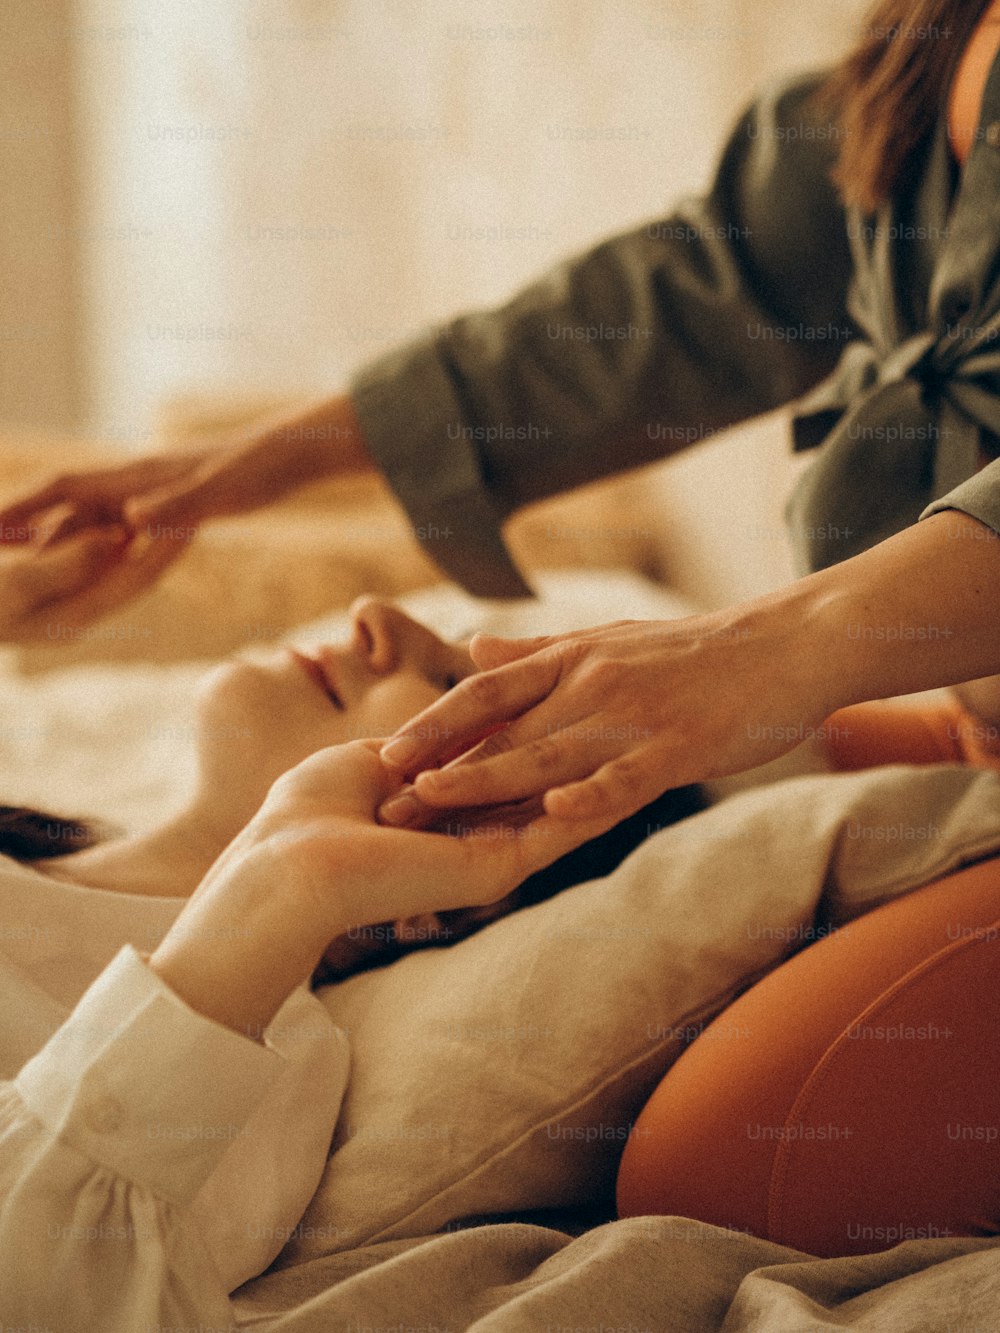 uma mulher recebendo uma massagem de uma mulher em uma cama